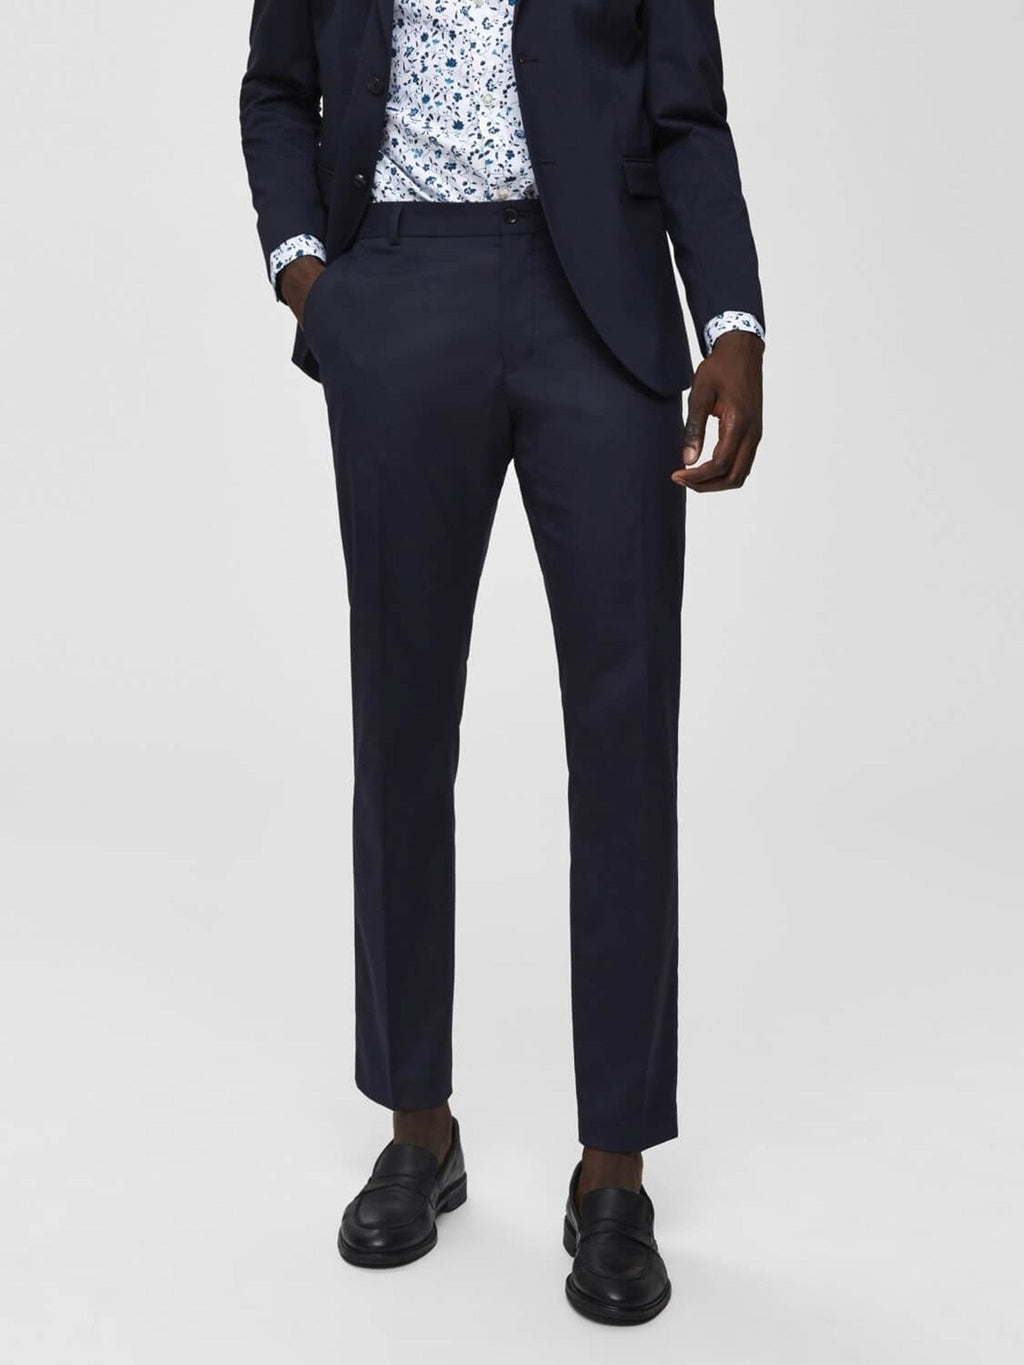 Slim fit suit pants - Navy